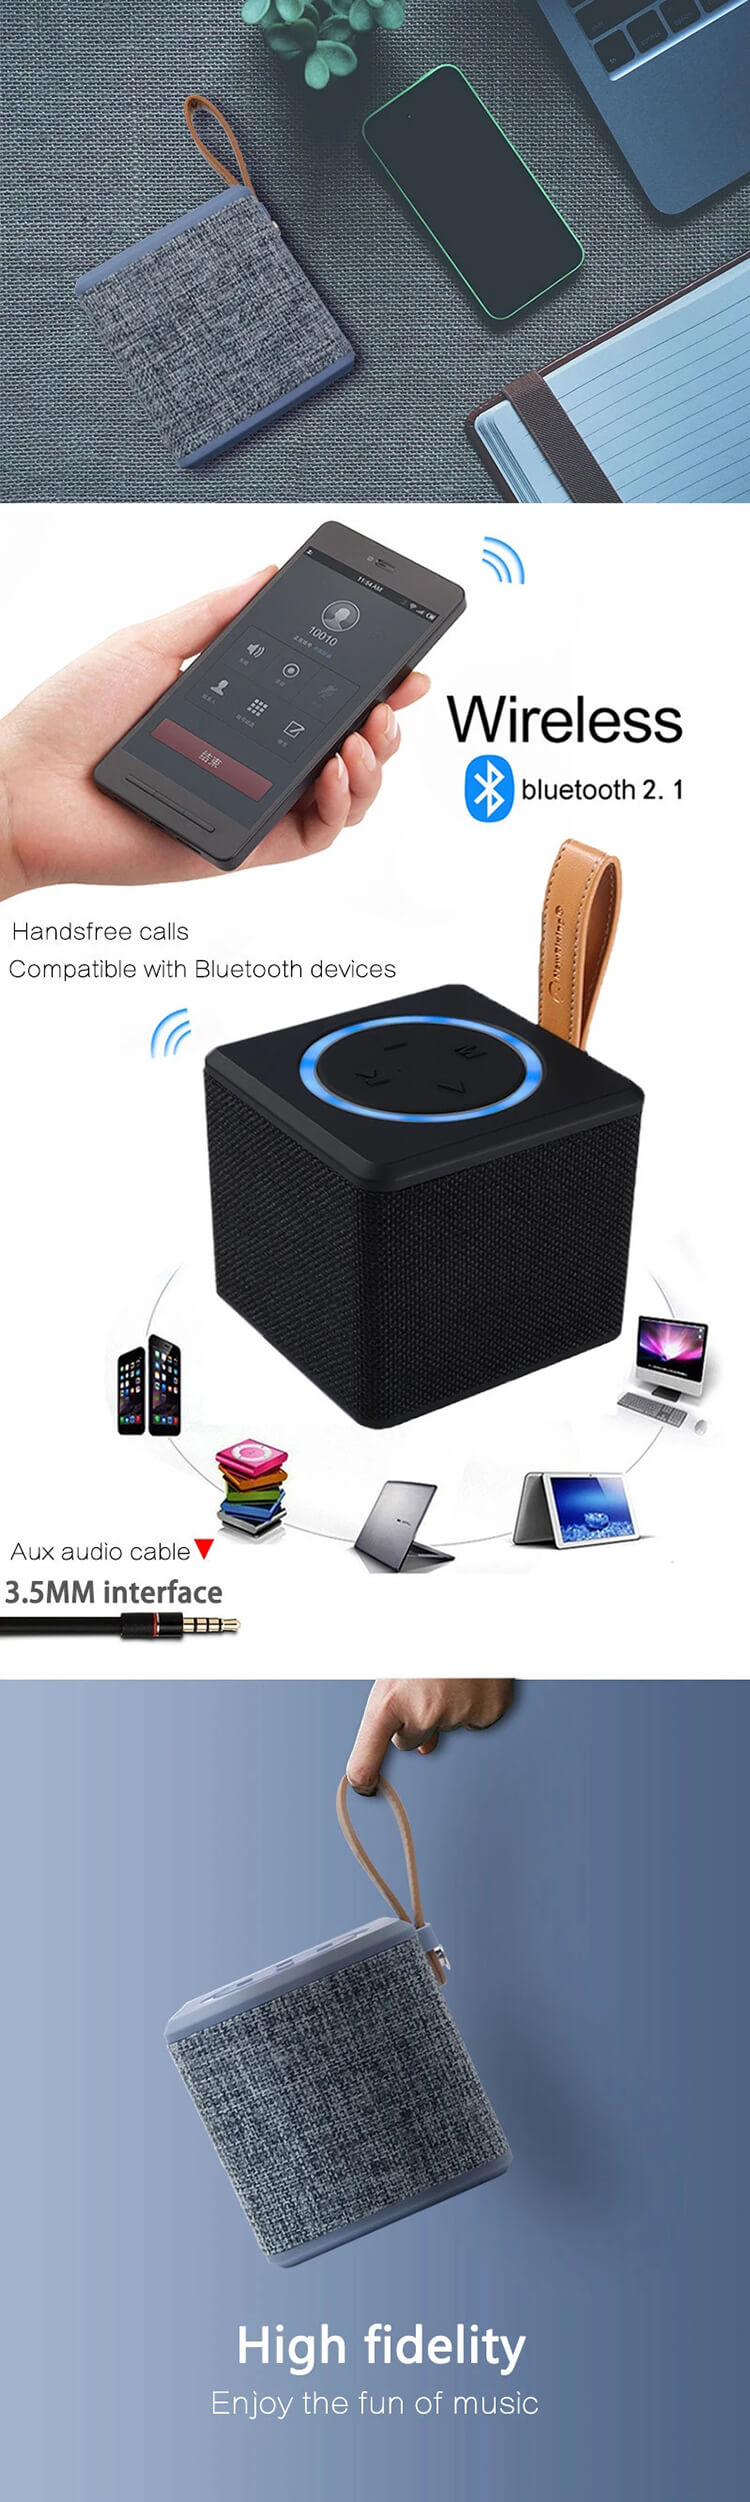 Wireless-5W-Stereo-Outdoor-Speaker-Support-FM-TF-Handfree-Multimedia-Mini-Bluetooth-Speaker.webp (1).jpg